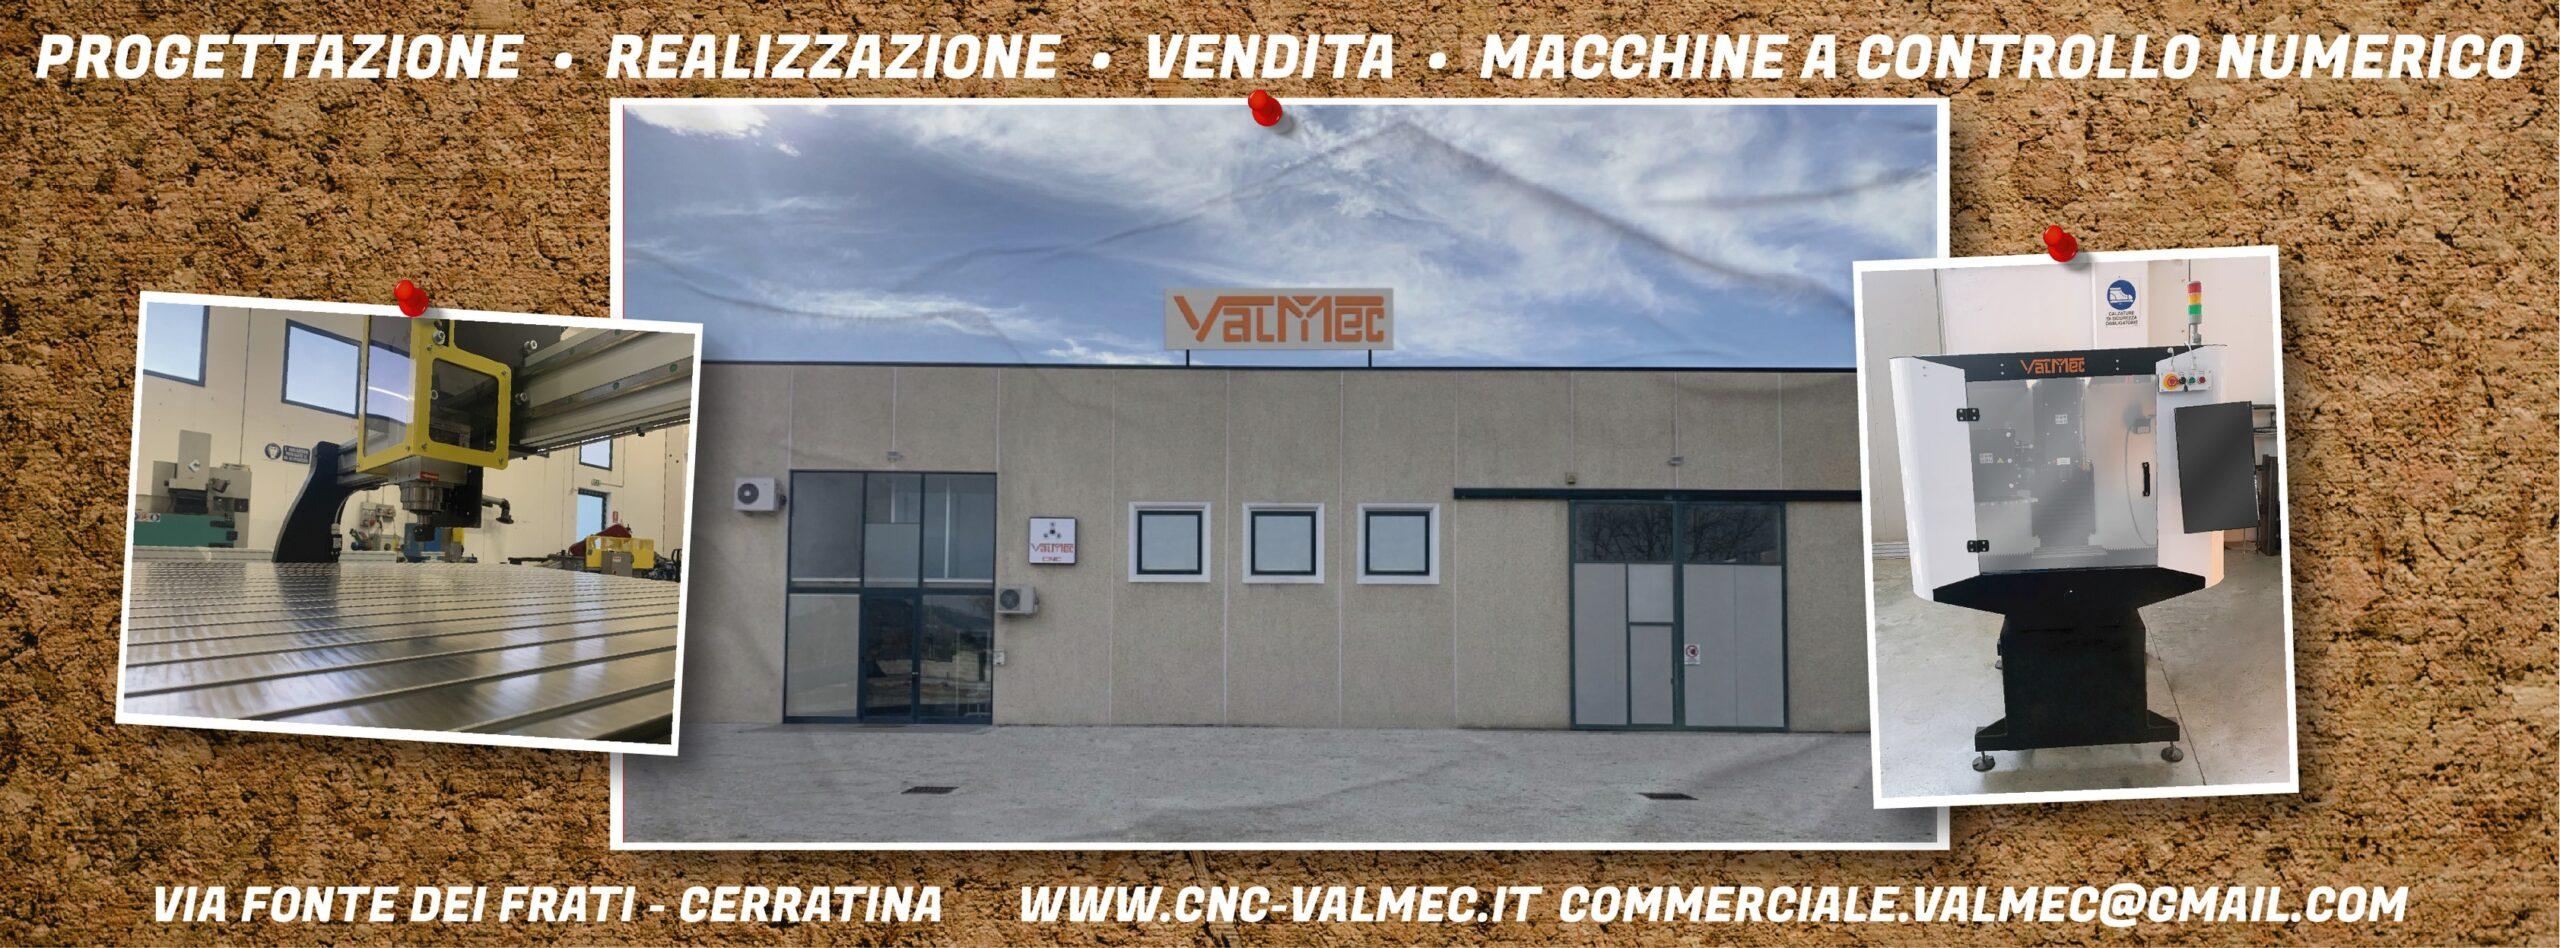 Pantografo CNC Valmec